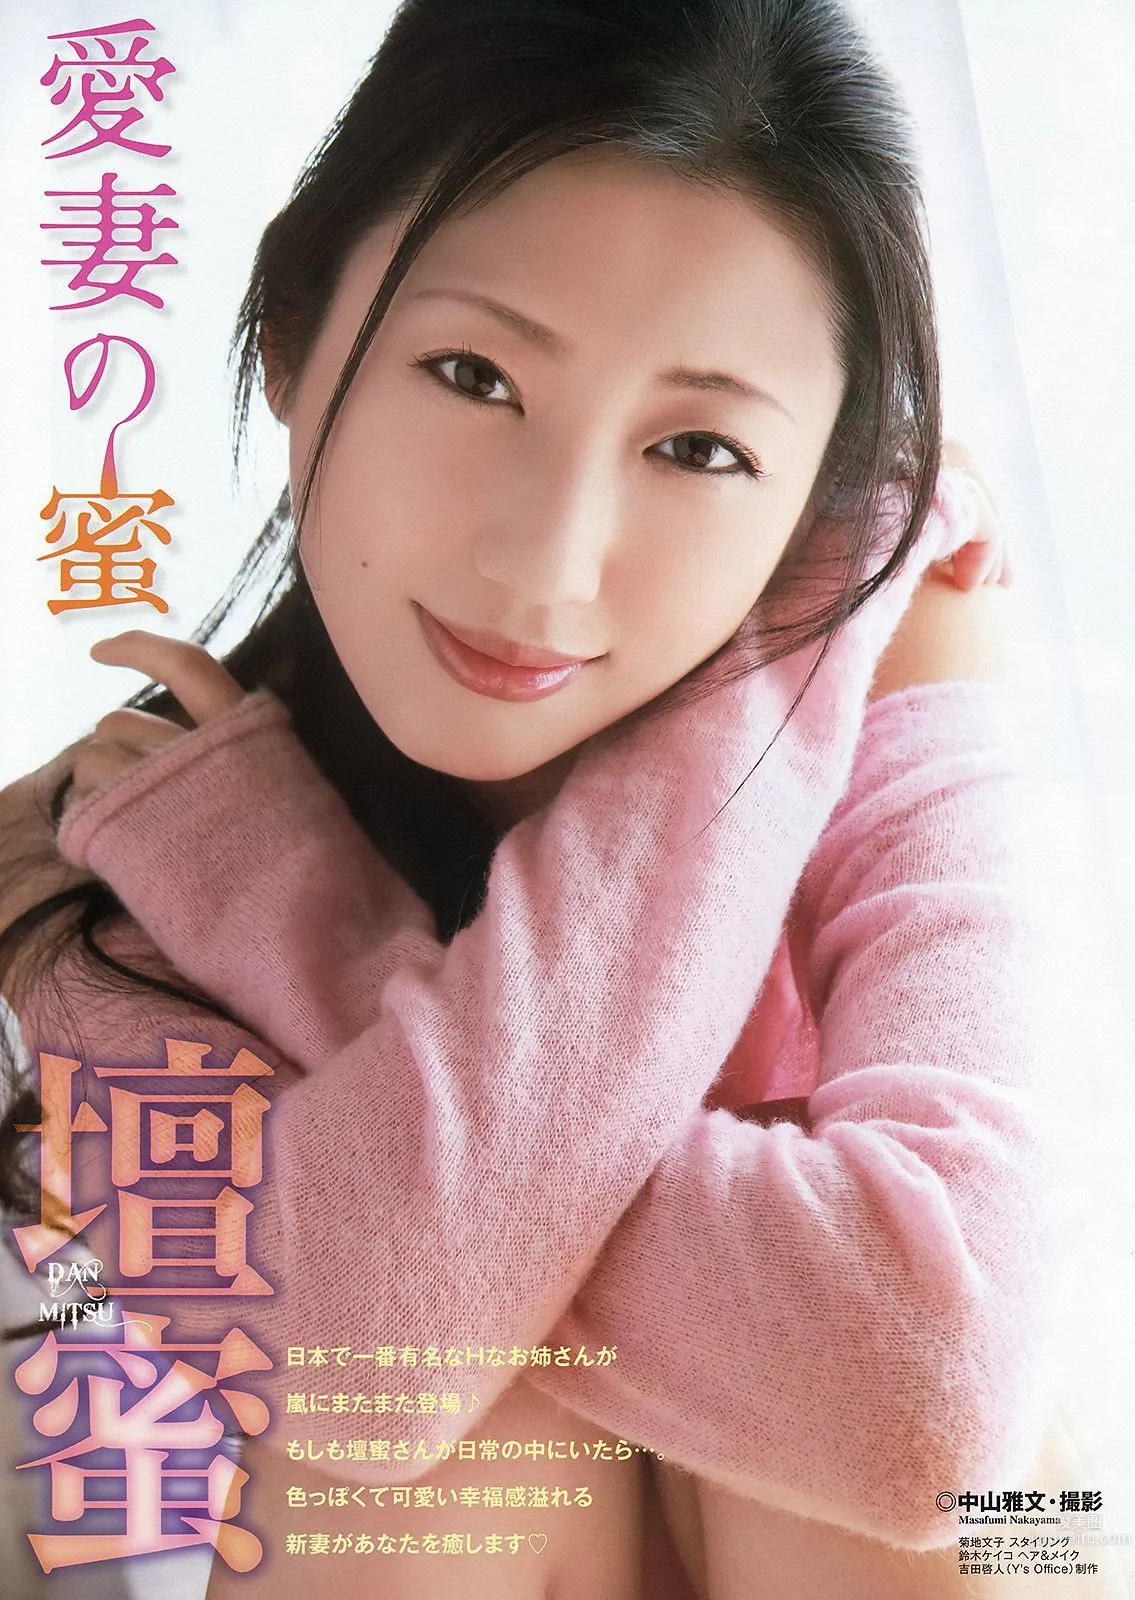 壇蜜 天使もえ [Young Animal Arashi 岚特刊] No.05 2015年 写真杂志2